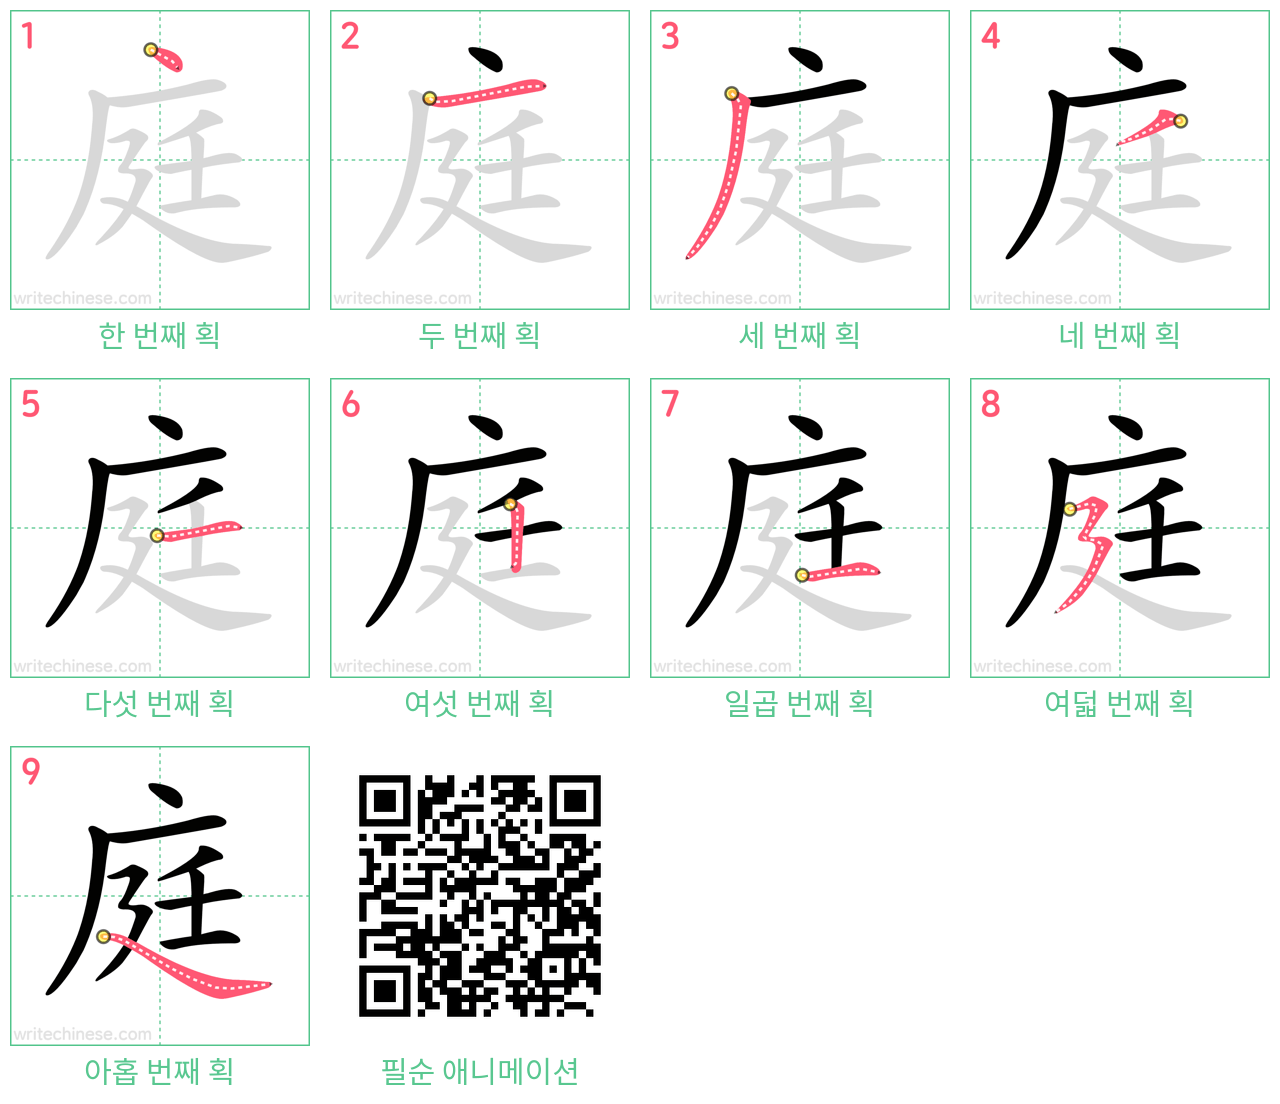 庭 step-by-step stroke order diagrams